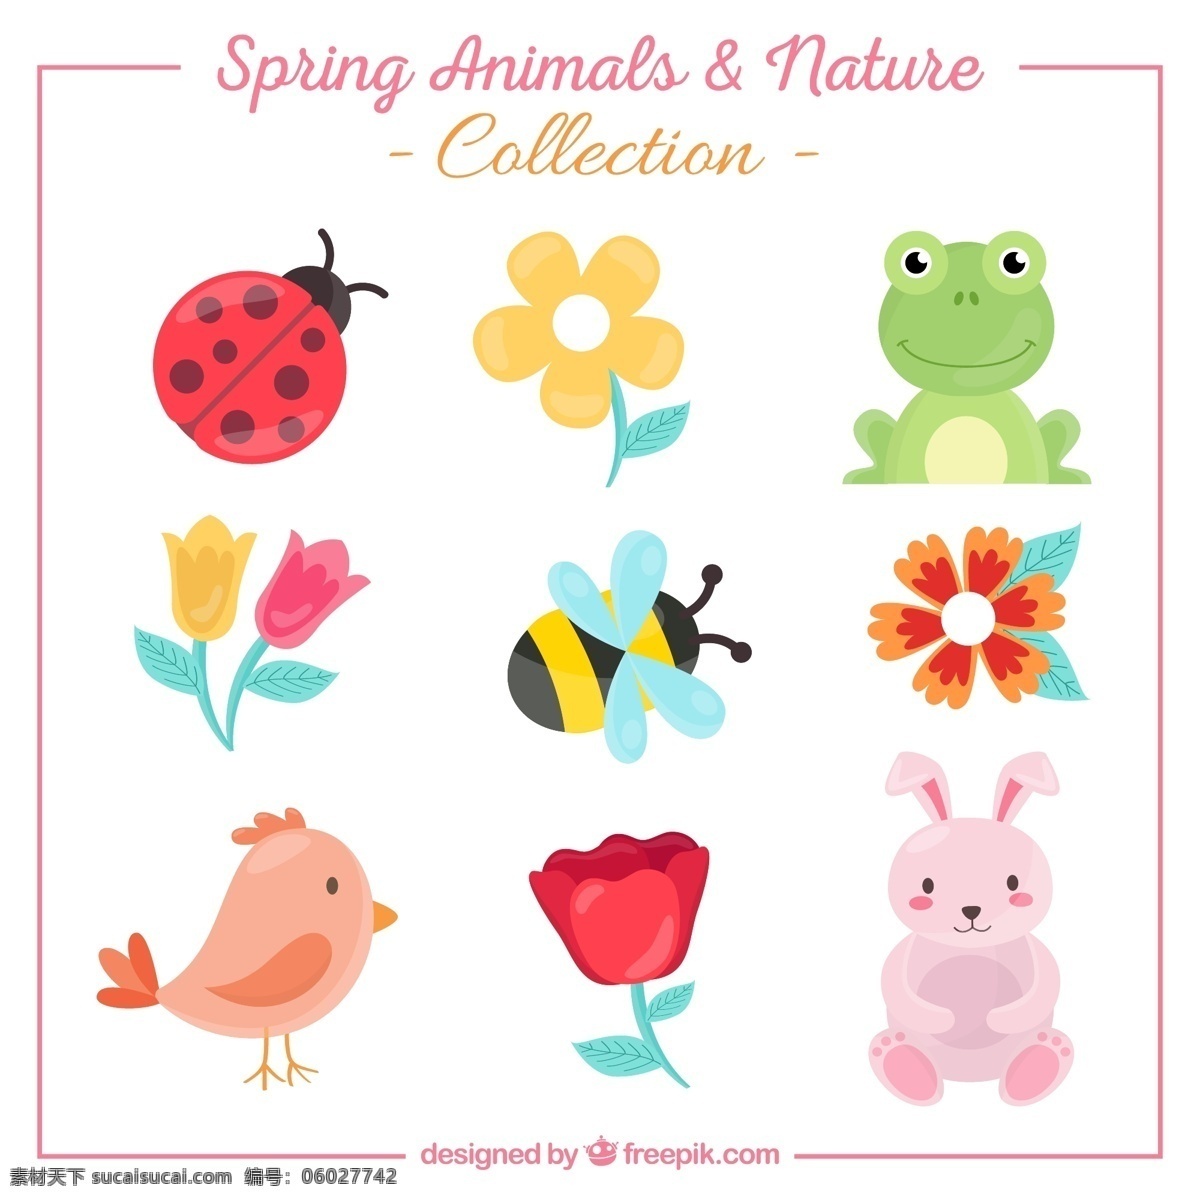 手绘 动物 花卉 自然 春天 可爱 蜜蜂 多彩 青蛙 兔子 瓢虫 昆虫 可爱的 收集 彩色的集合